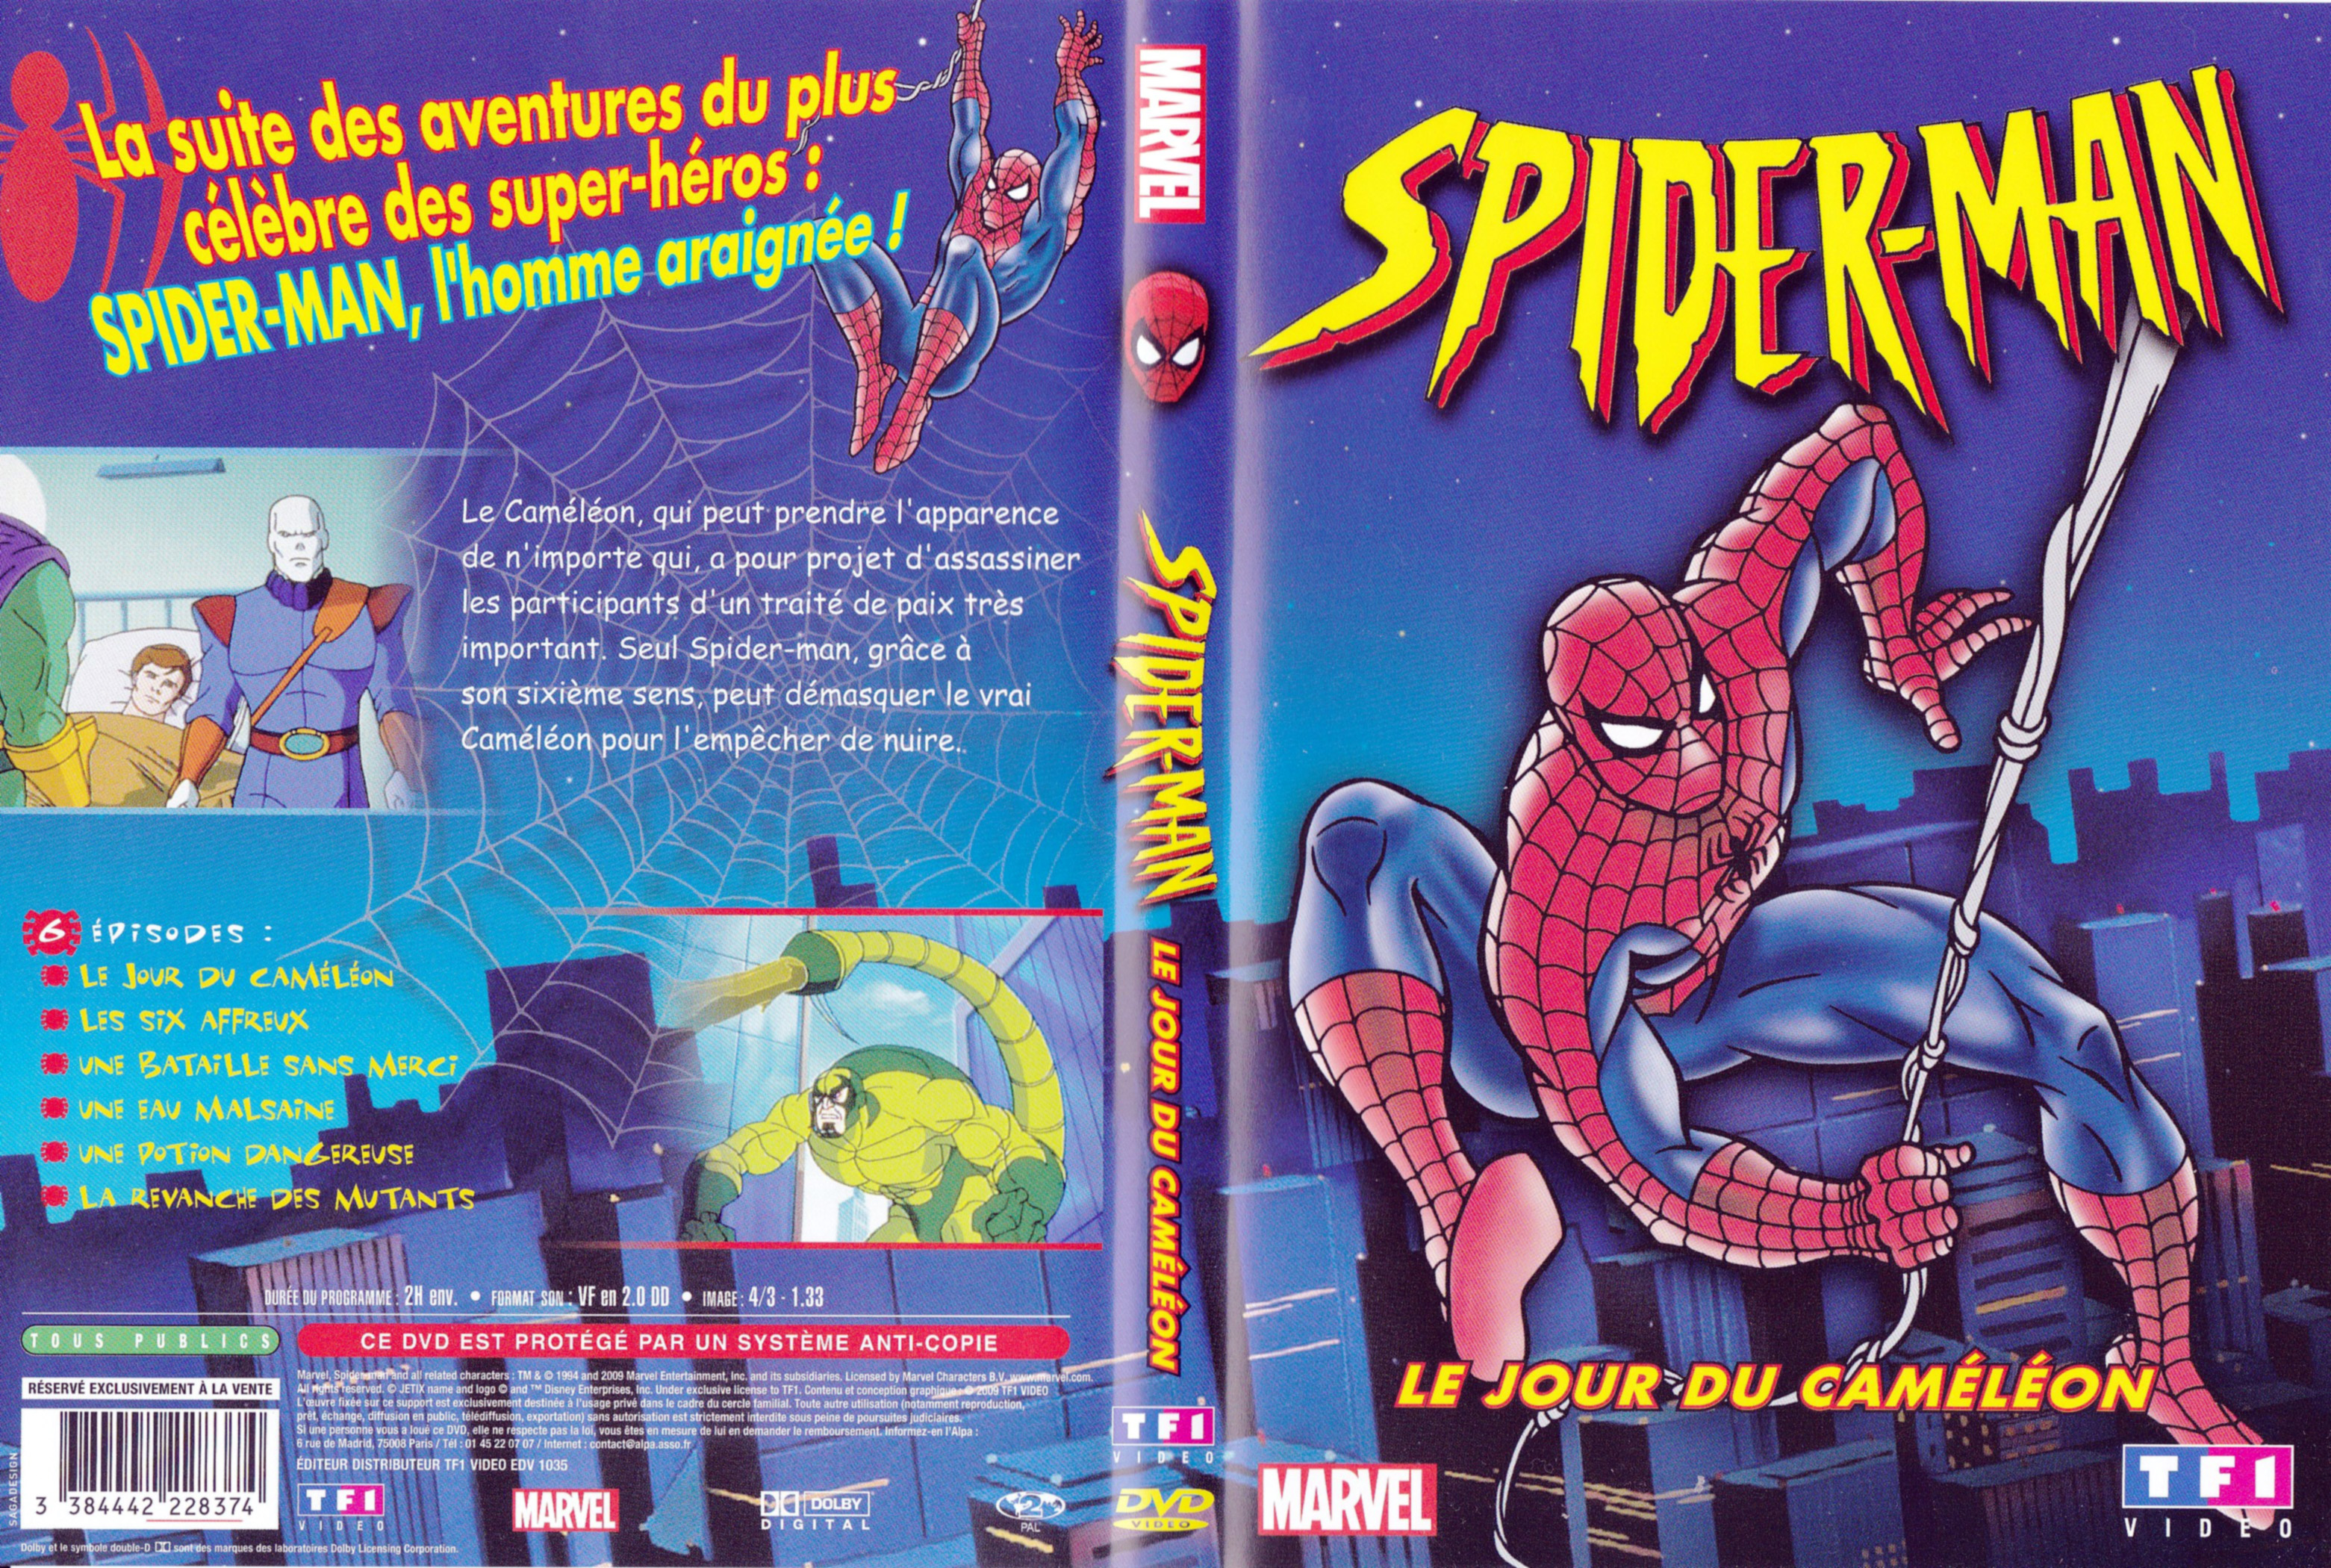 Jaquette Dvd De Spiderman Le Jour Du Caméléon Da Cinéma Passion